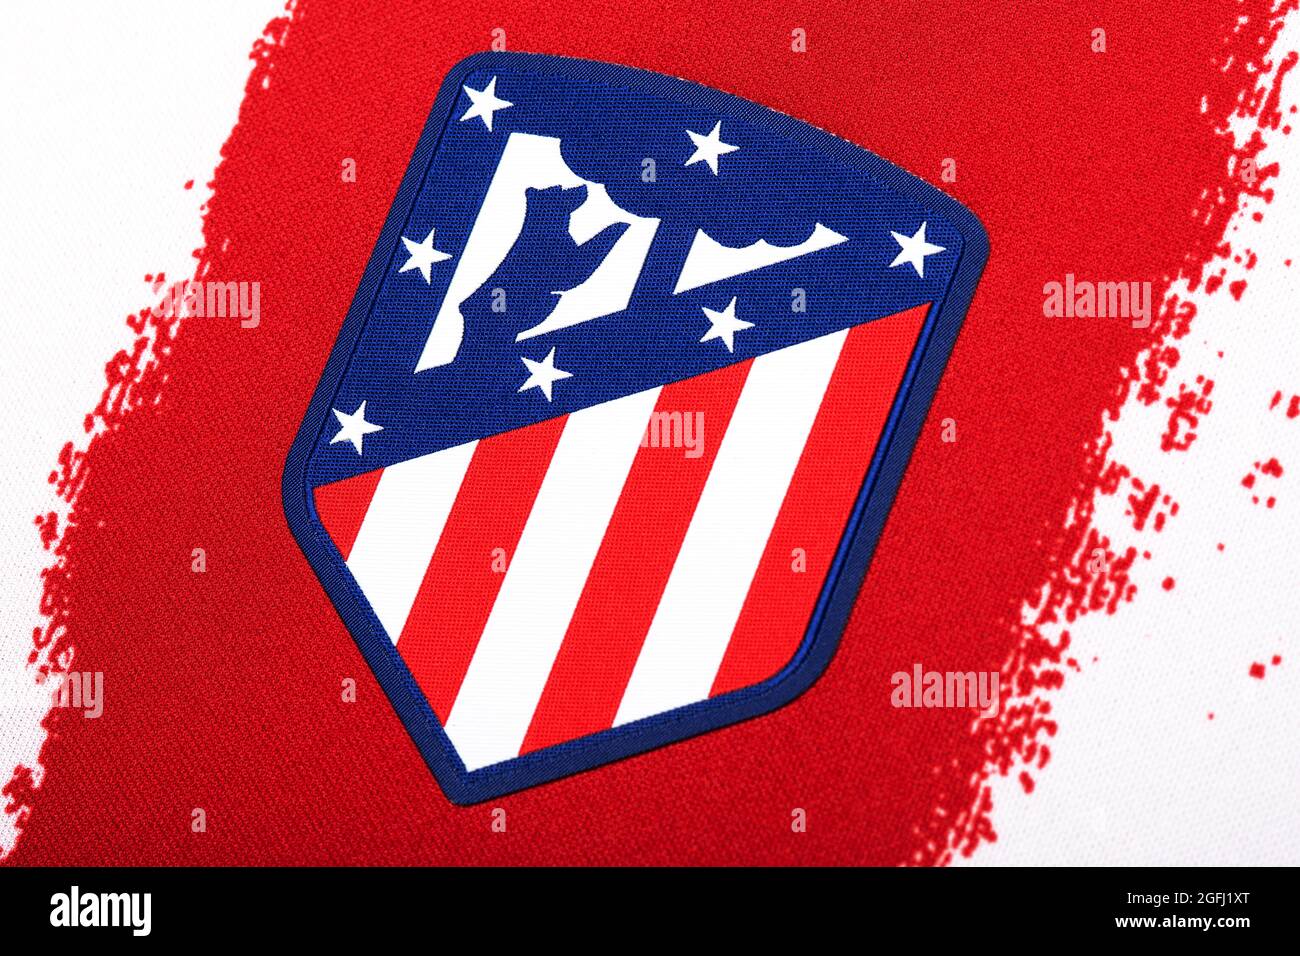 Nahaufnahme des Trikots des Club Atlético de Madrid 2020/21. Stockfoto